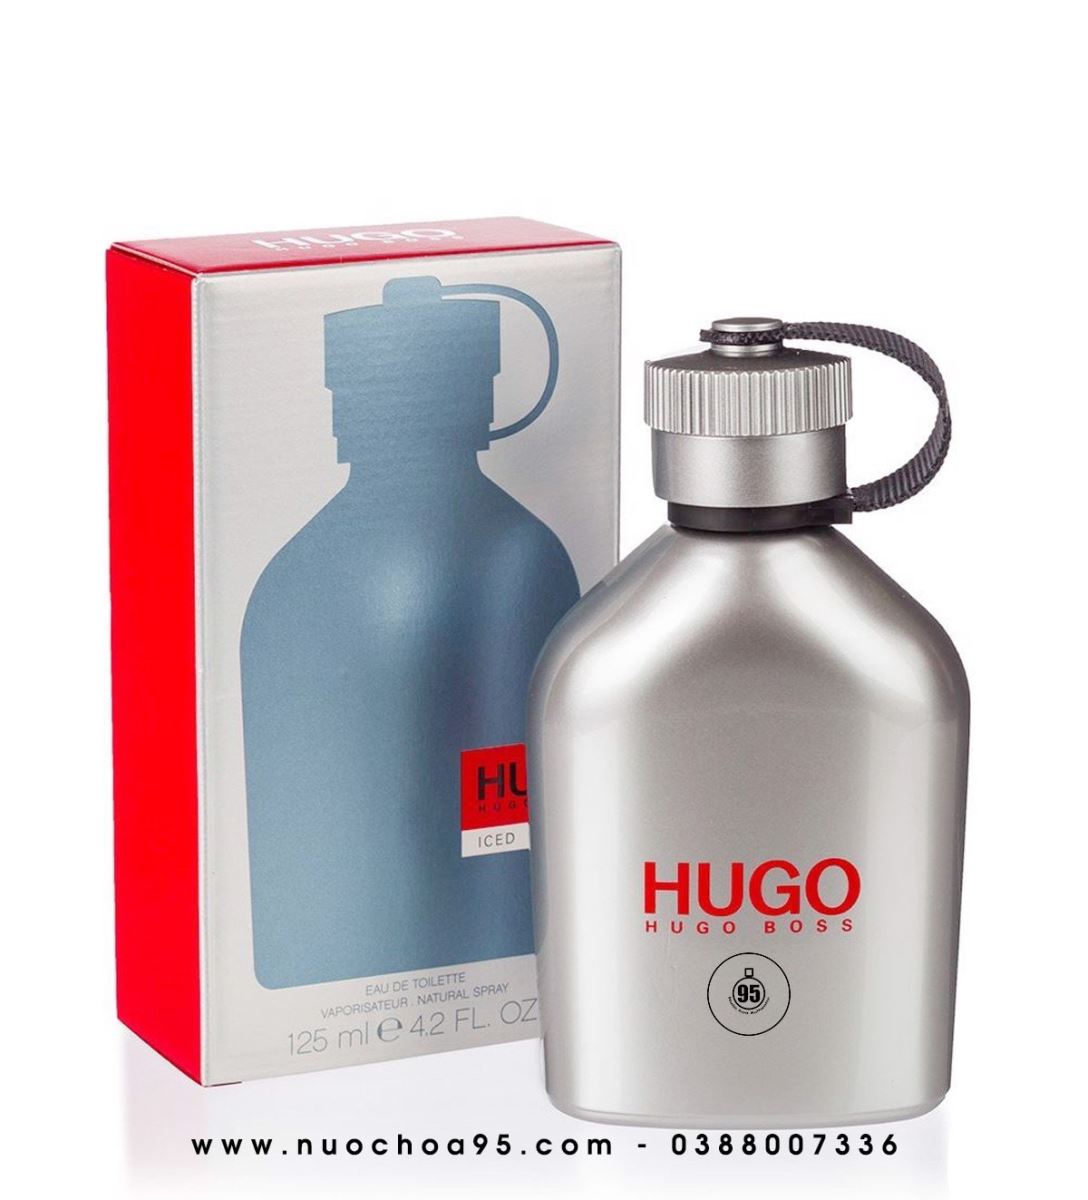 Nước hoa Hugo Boss Iced